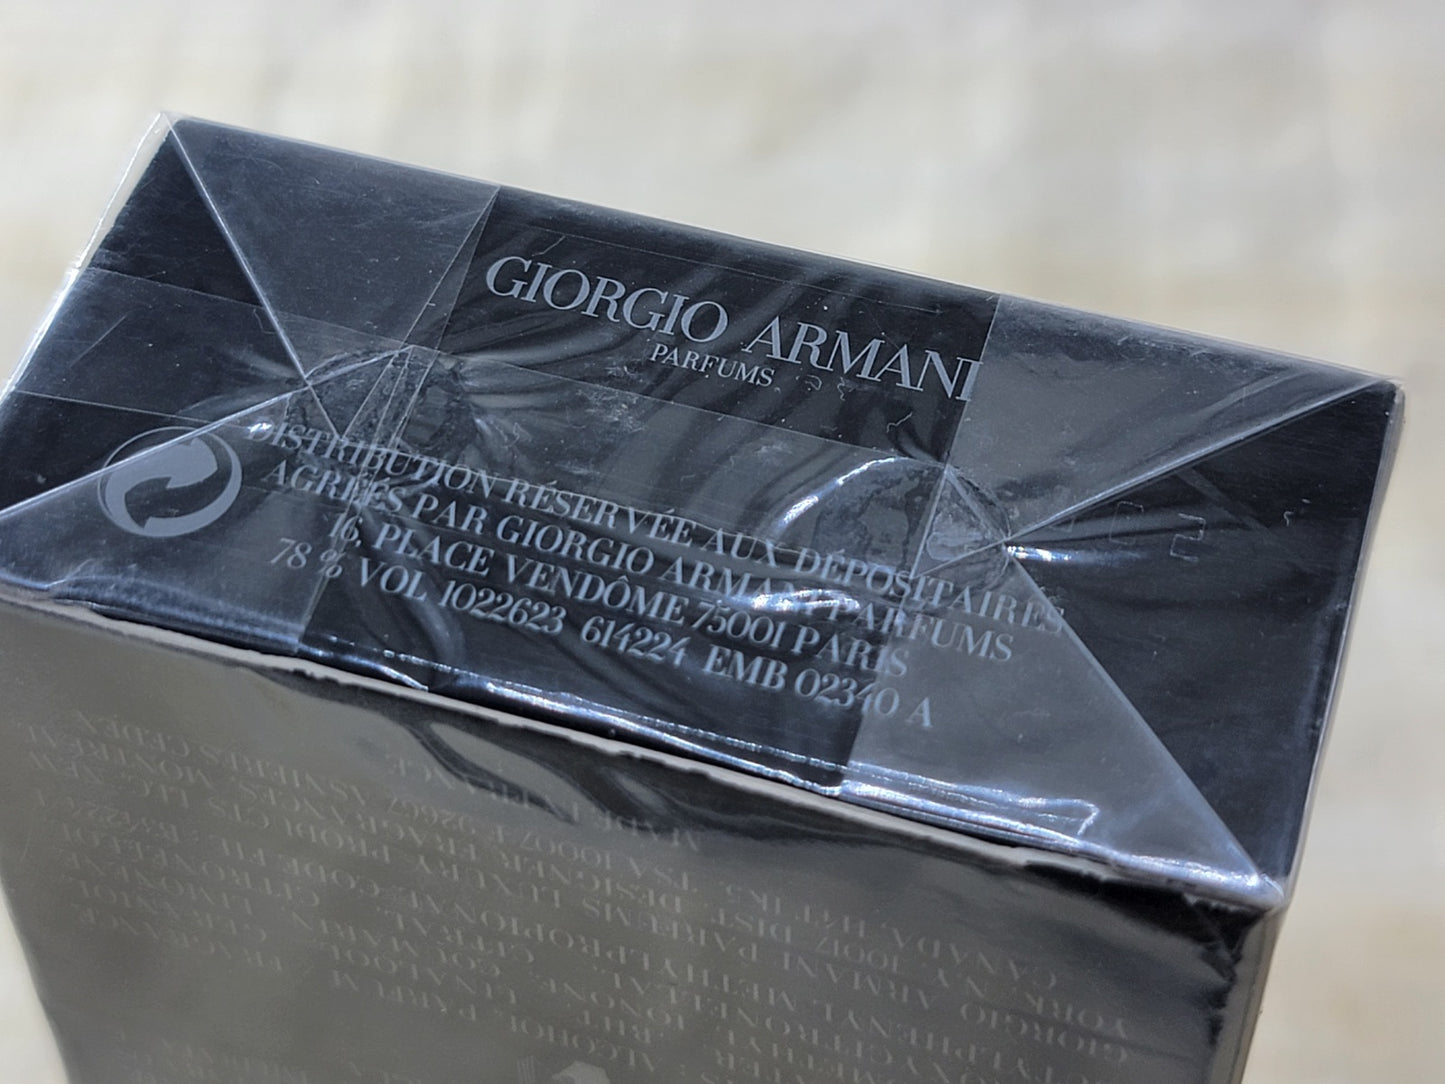 Giorgio Armani Attitude Extreme for Men EDT SPRAY 75 ml 2.5 oz OR 50 ml 1.7 oz, Vintage, Rare, Sealed